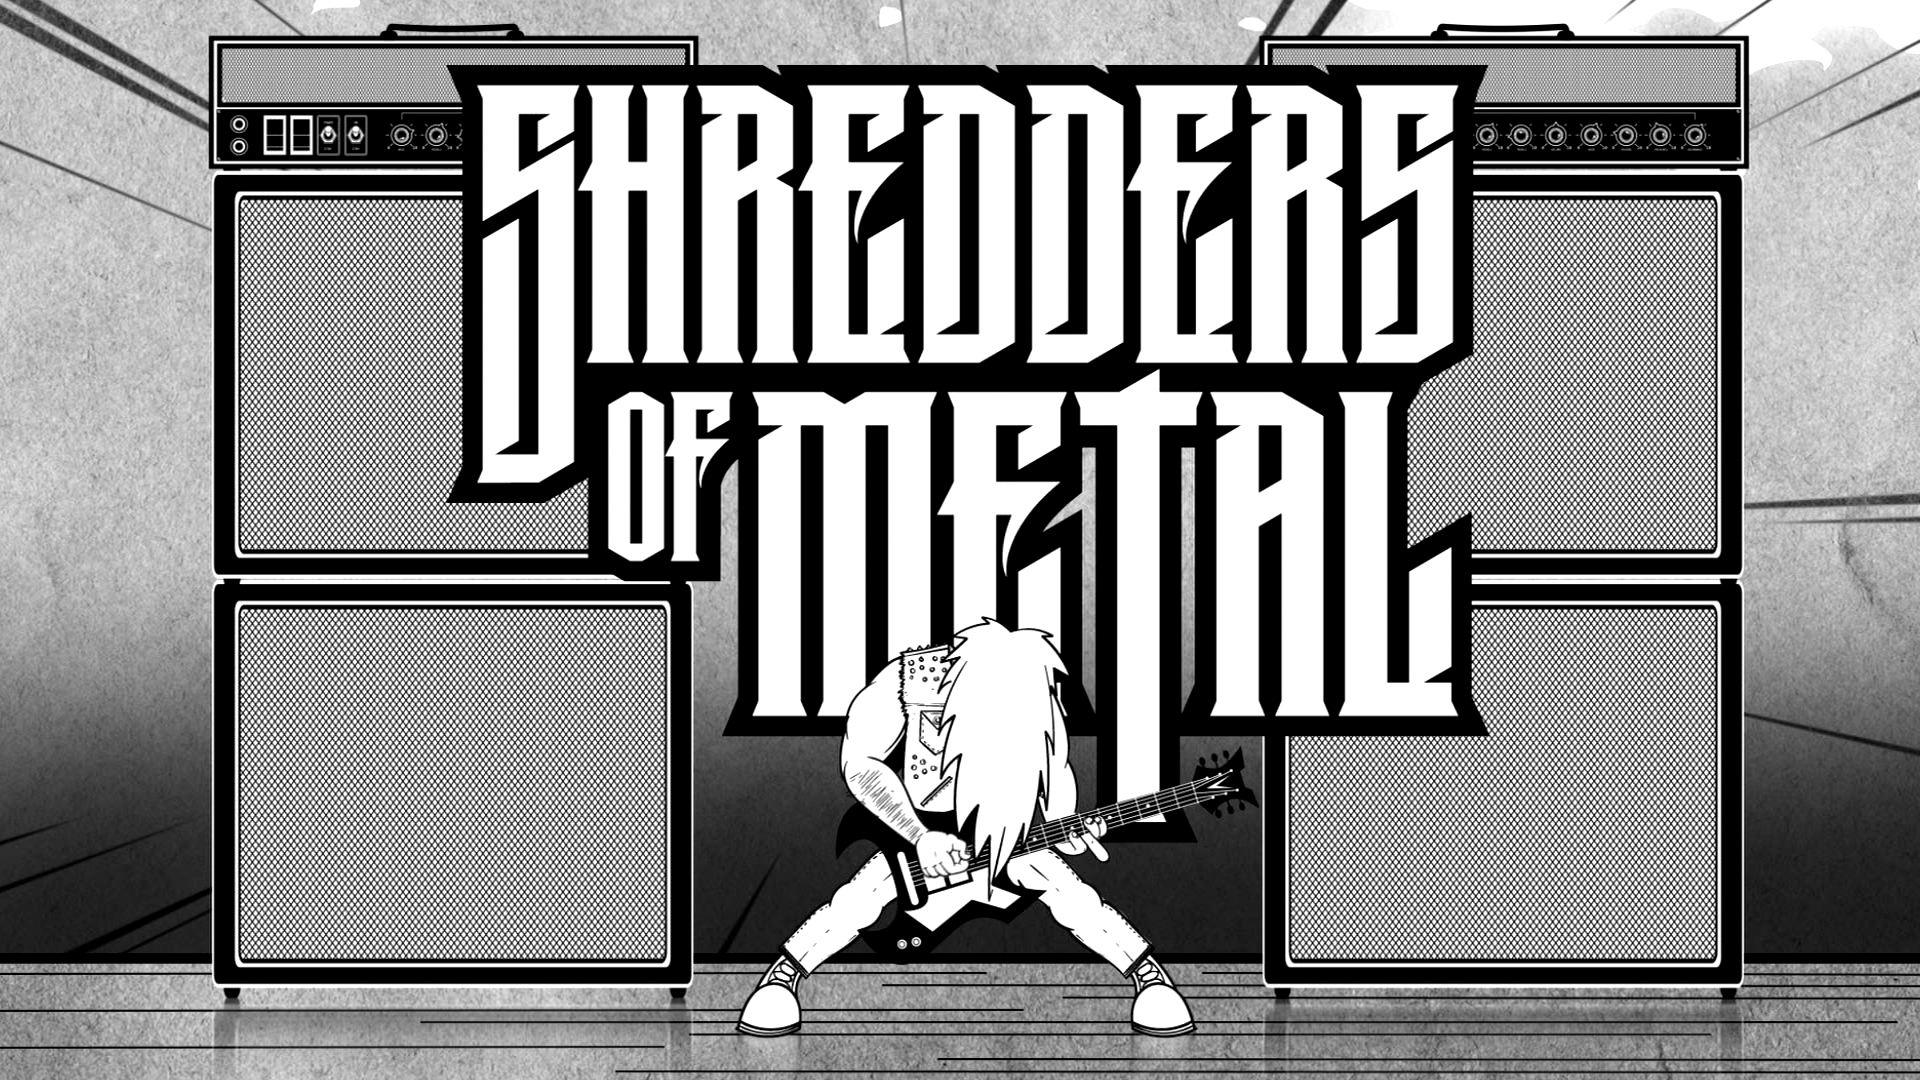 Shredders of Metal